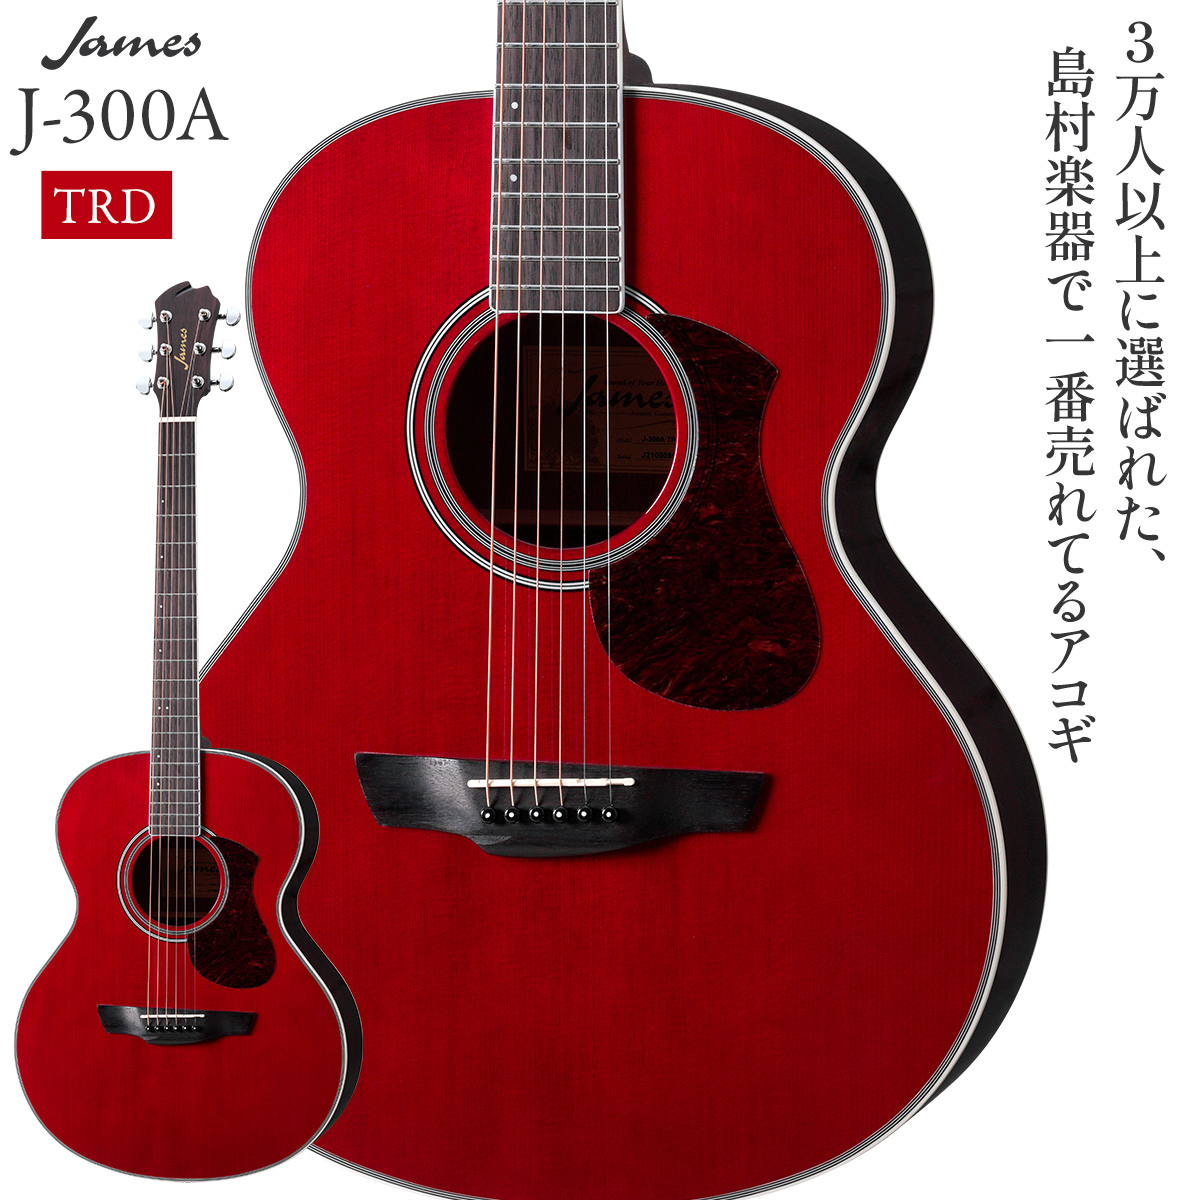 James J-300A TRD (トランスレッド) アコースティックギター（新品